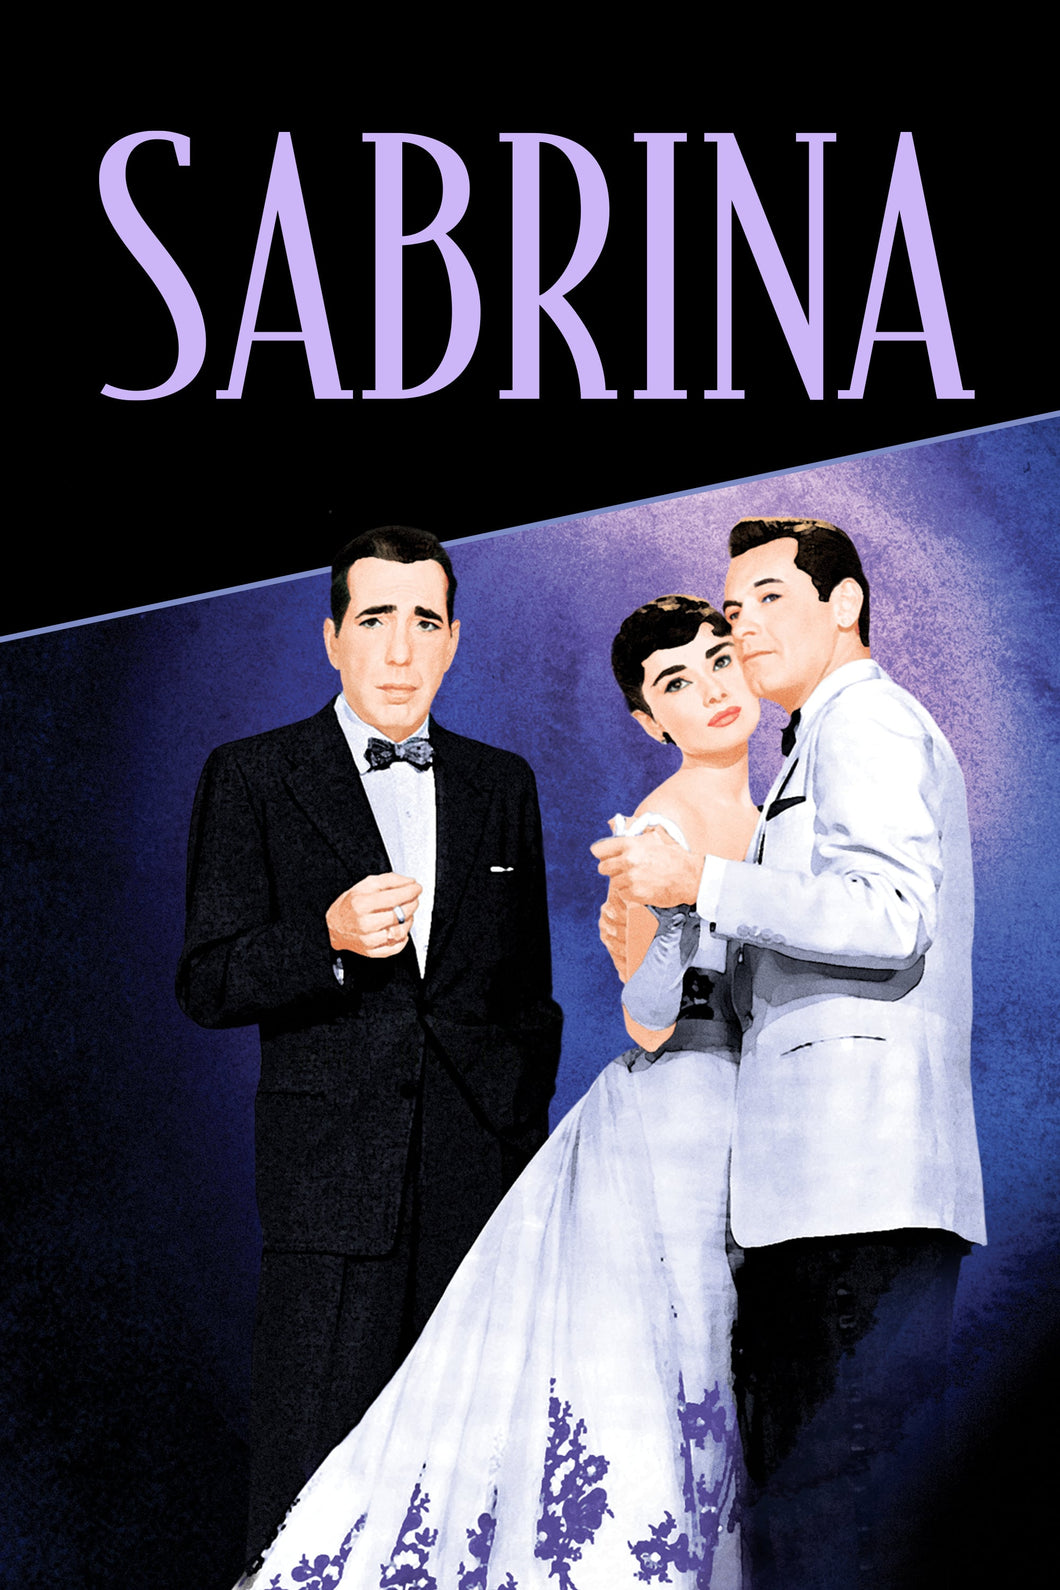 Sabrina (1954) v1 Movie Poster High Quality Glossy Paper A1 A2 A3 A4 A3 Framed or Unframed!!